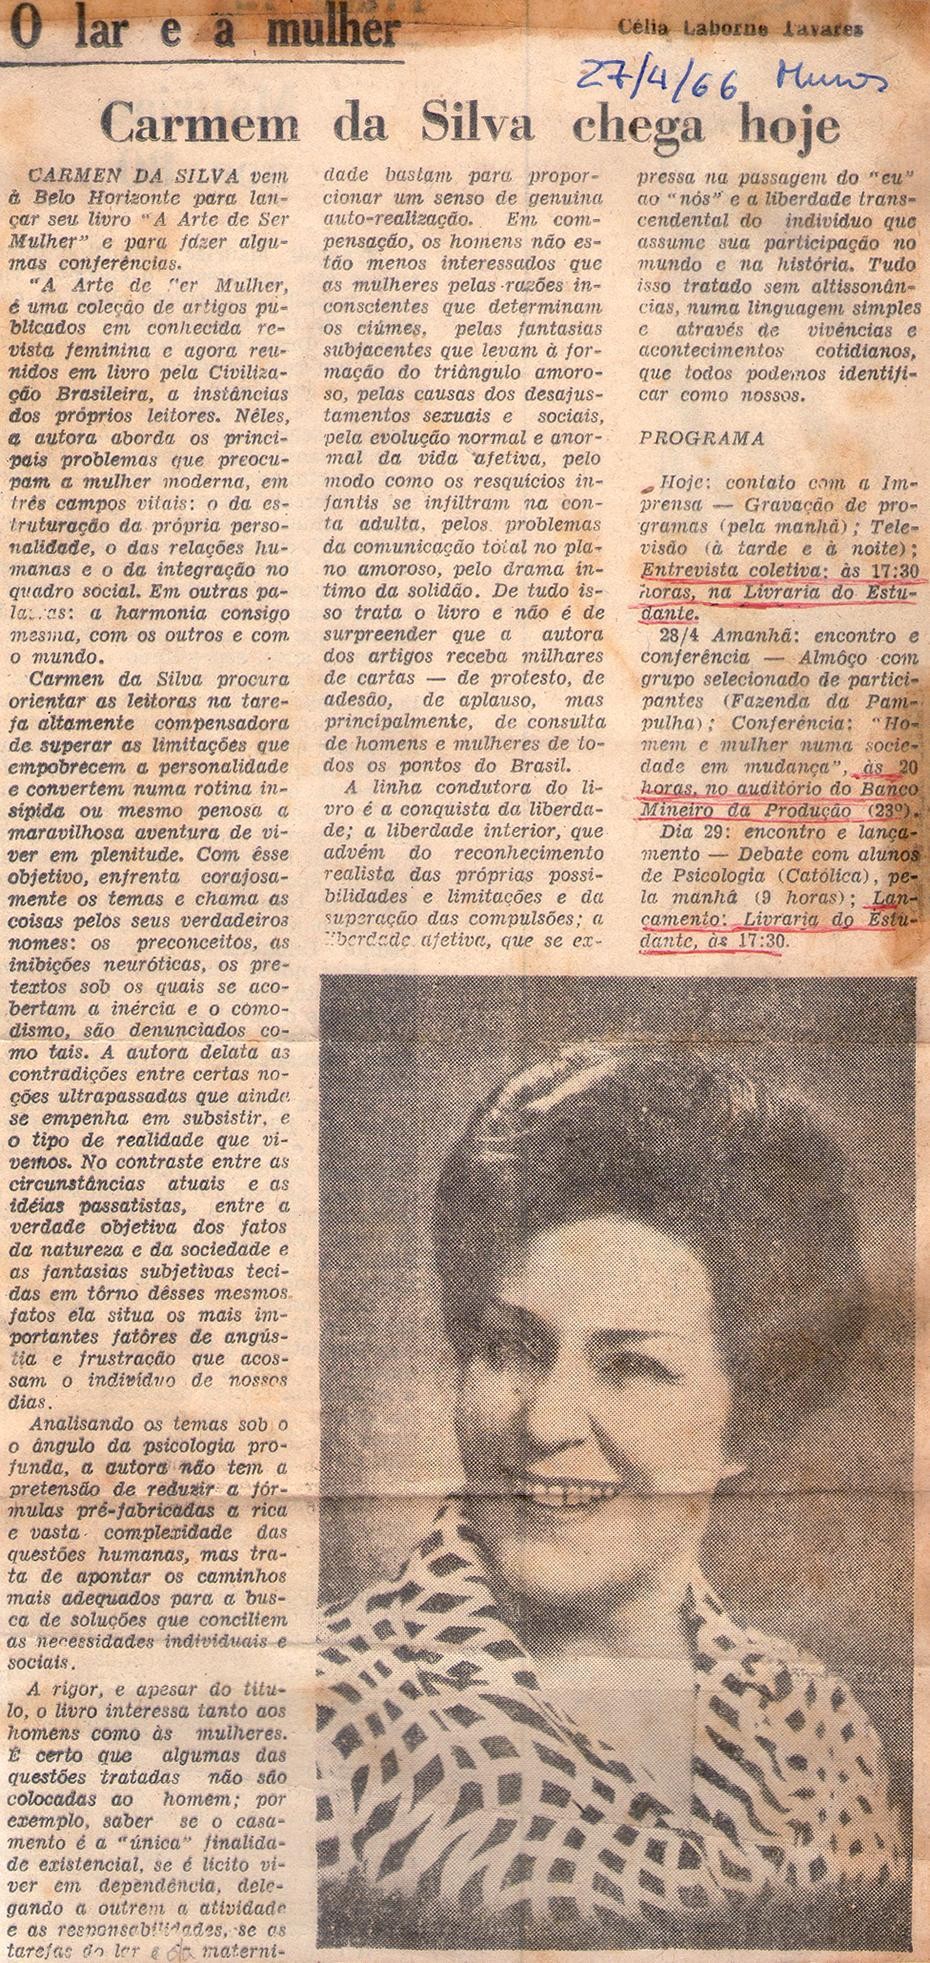 27 de Abrial de 1966 - Diário de Minas. Carmen da Silva chega hoje.